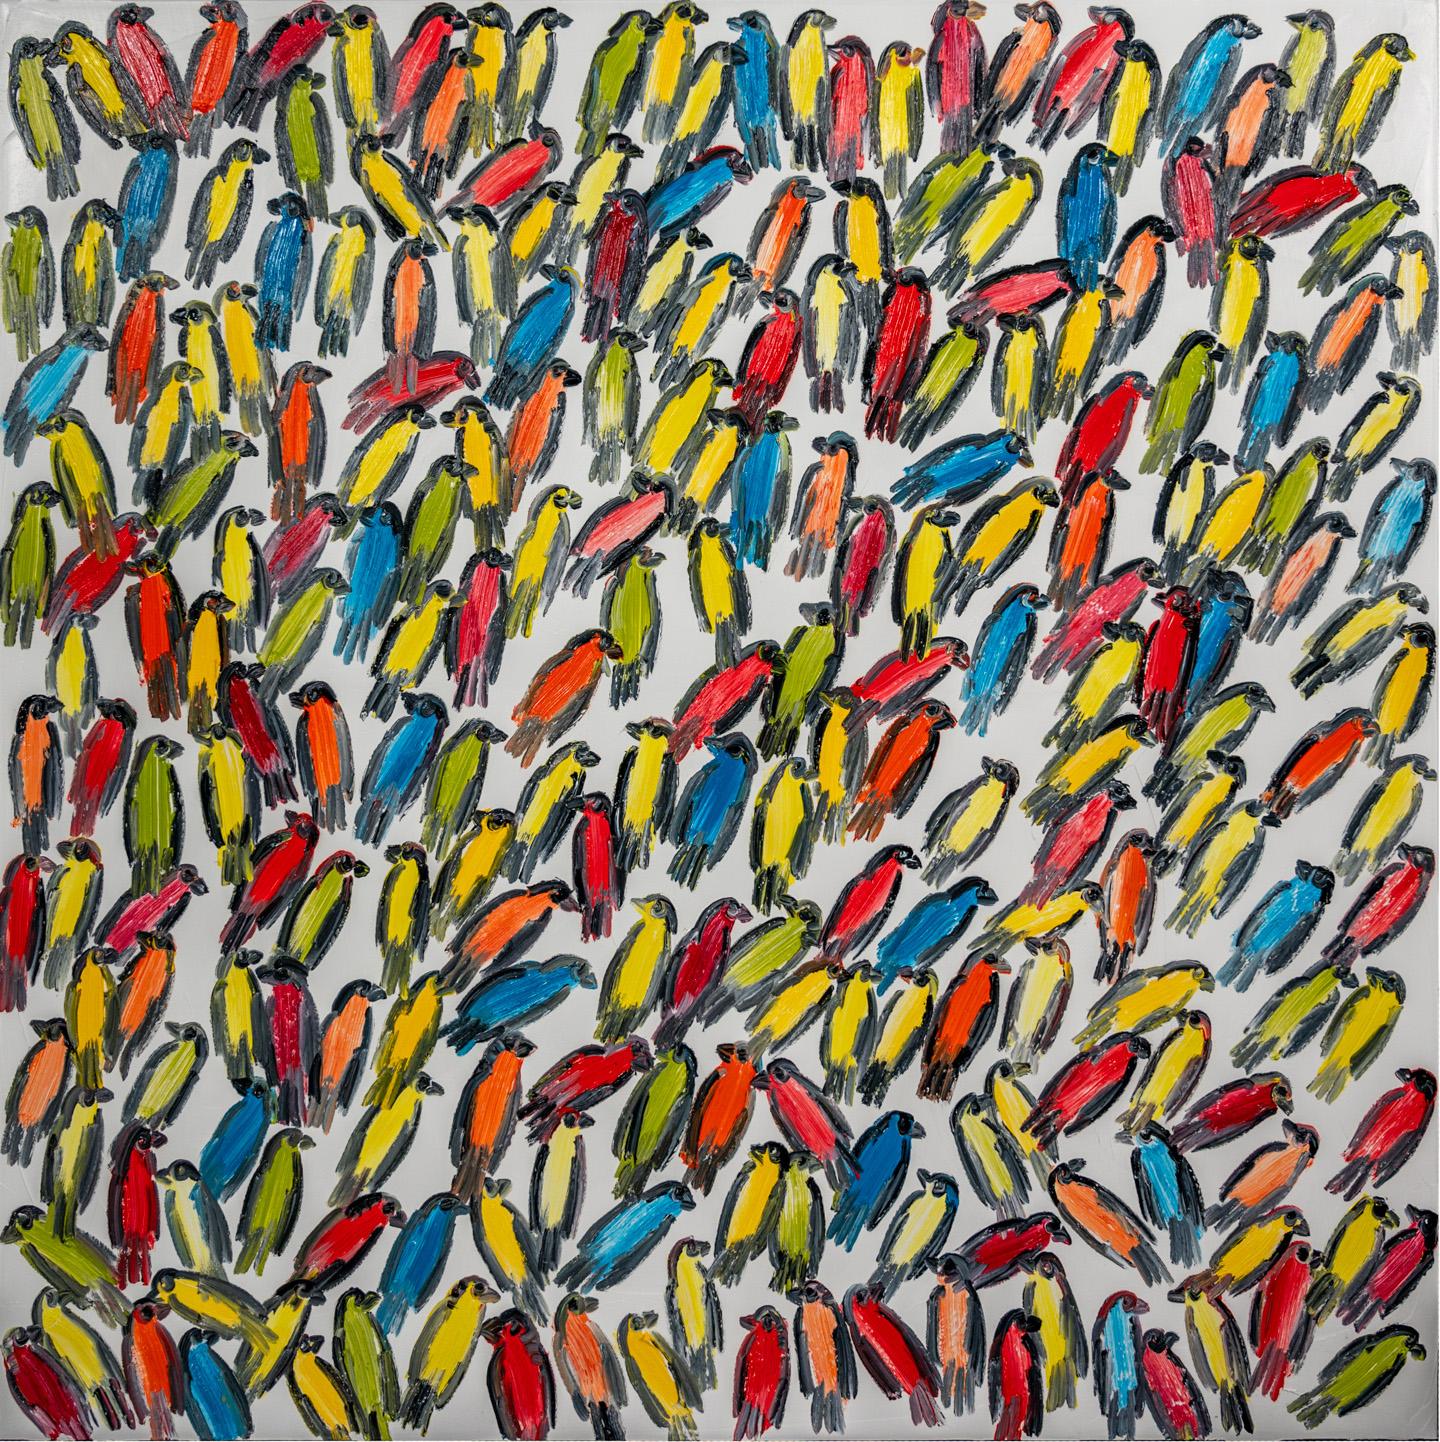 finken" von Hunt Slonem, 2022. Öl auf Leinwand, 48 x 48 cm. Dieses Gemälde zeigt die für Slonem typischen Finken in Weiß, Rot, Blau und Grün auf weißem Hintergrund.

Slonem, der als einer der großen Koloristen seiner Zeit gilt, zeichnet sich in